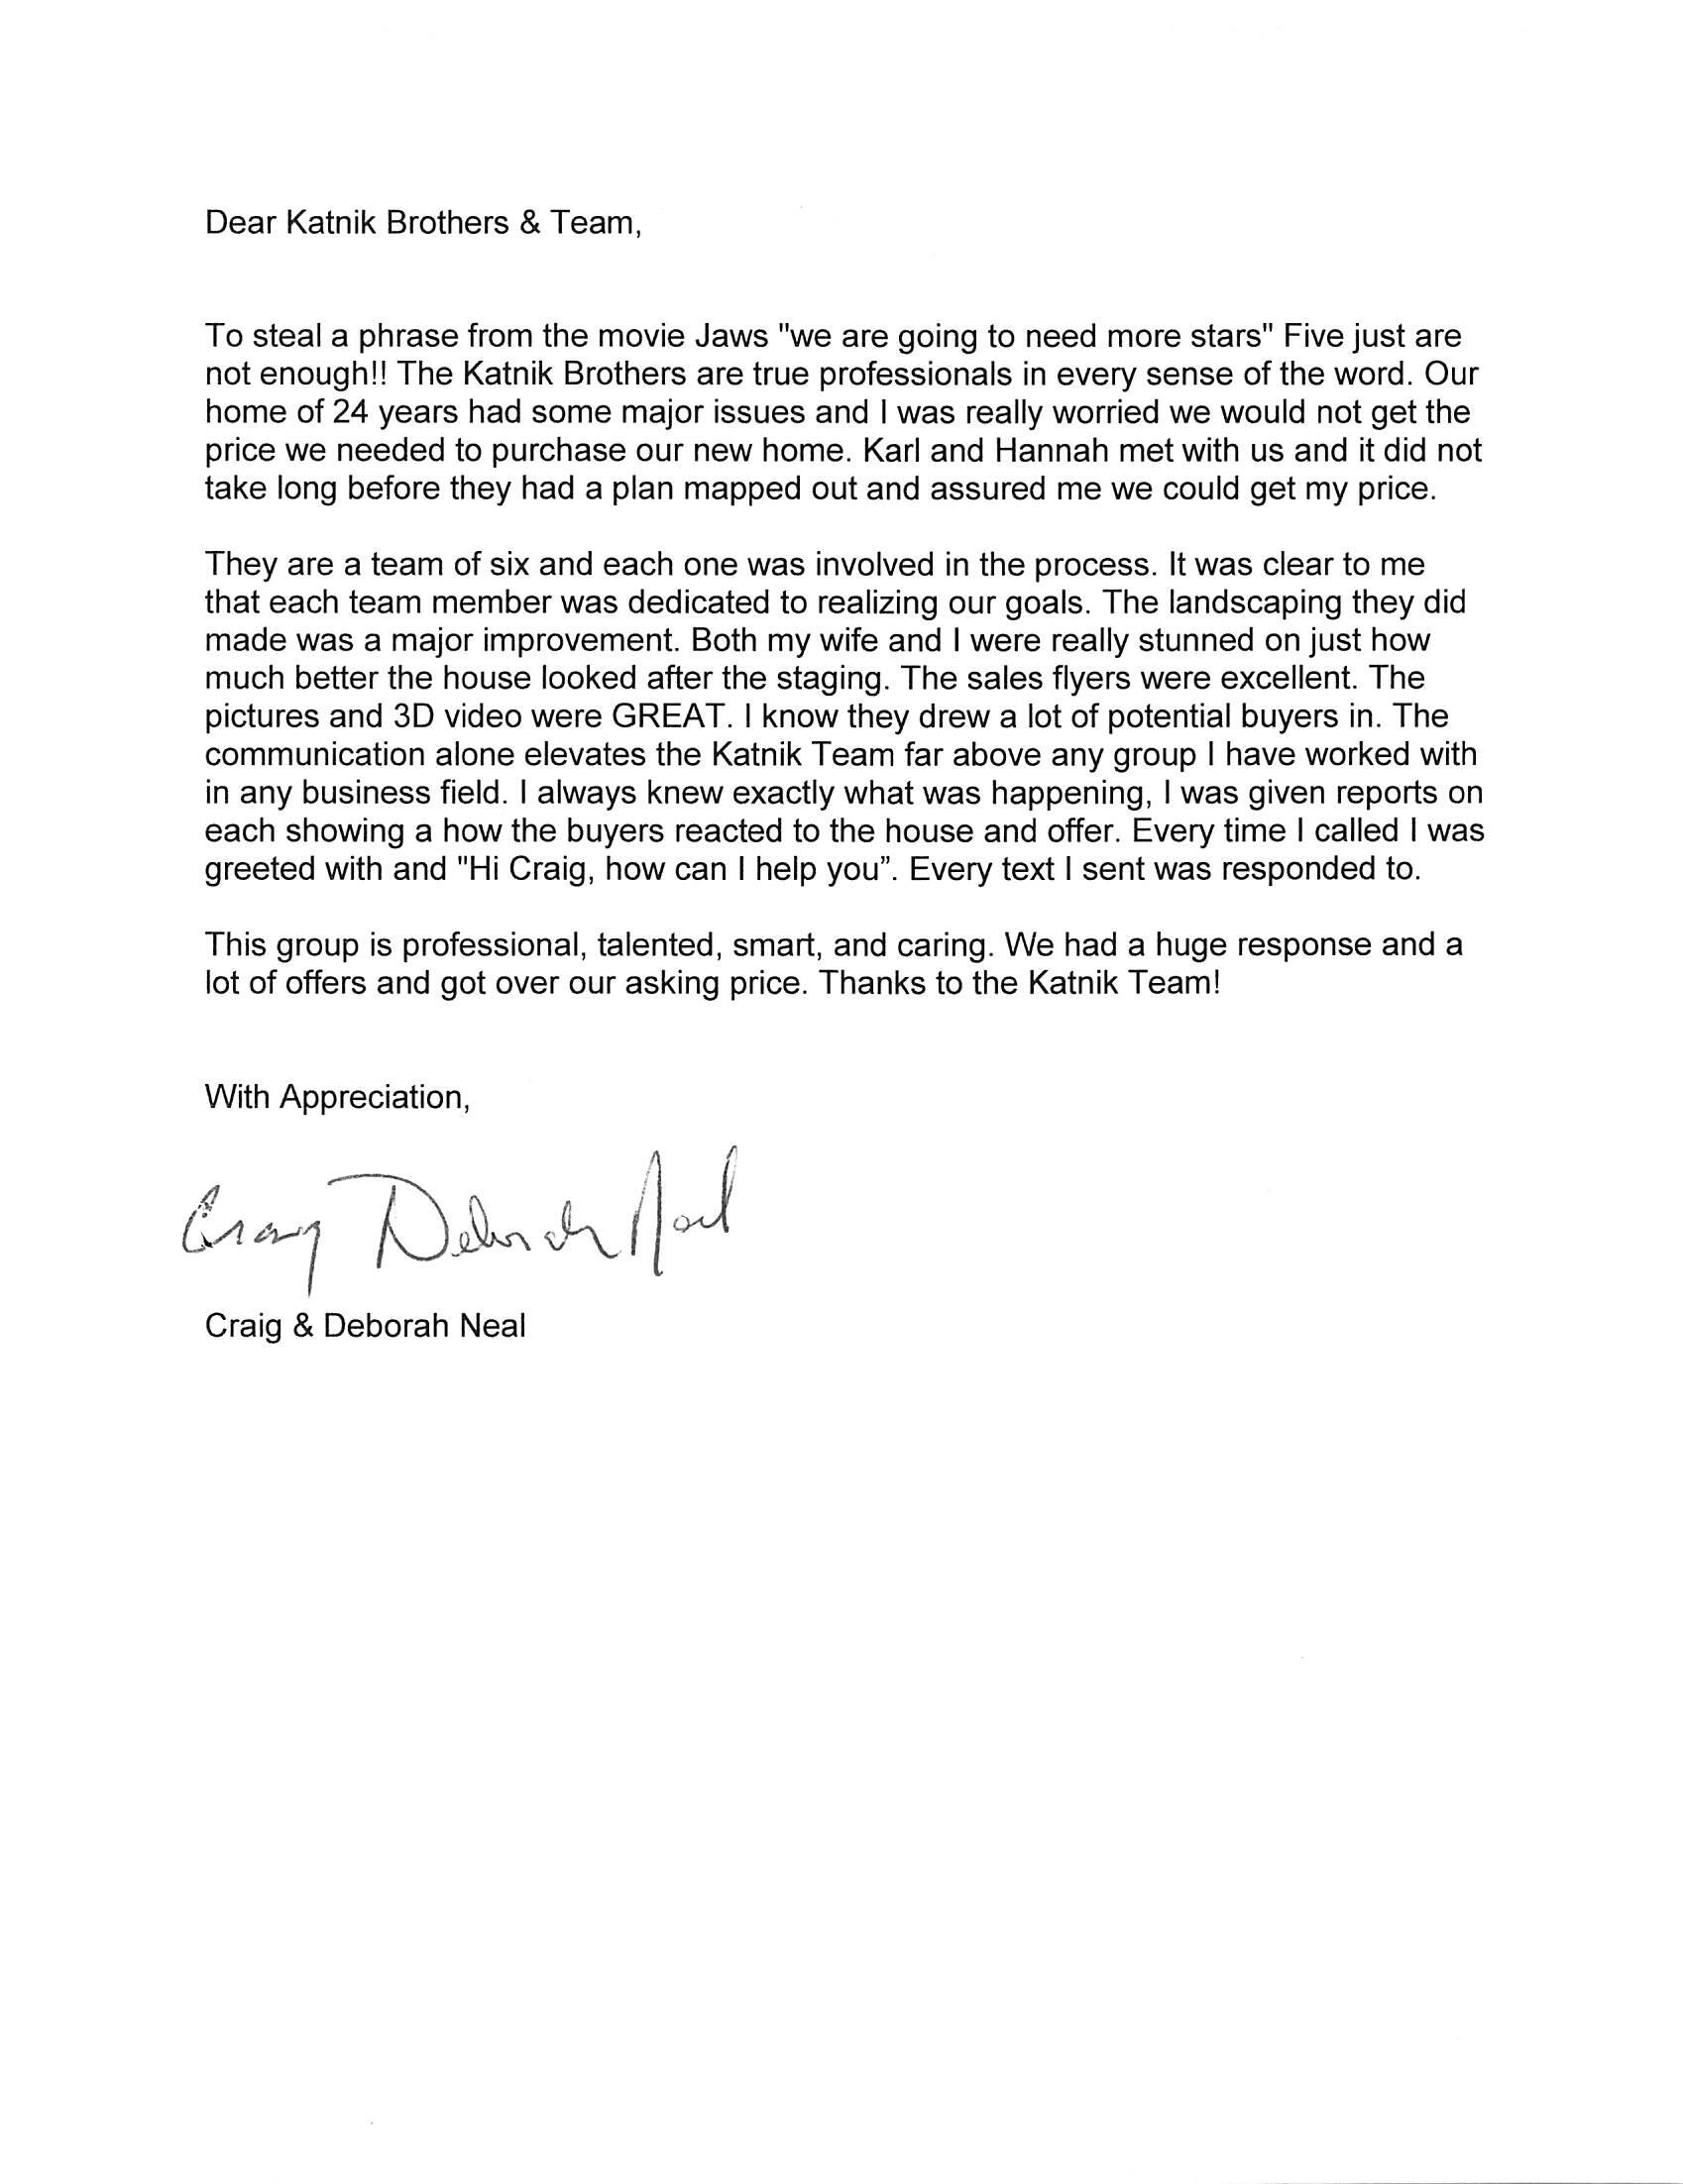 Craig Neal Appreciation Letter